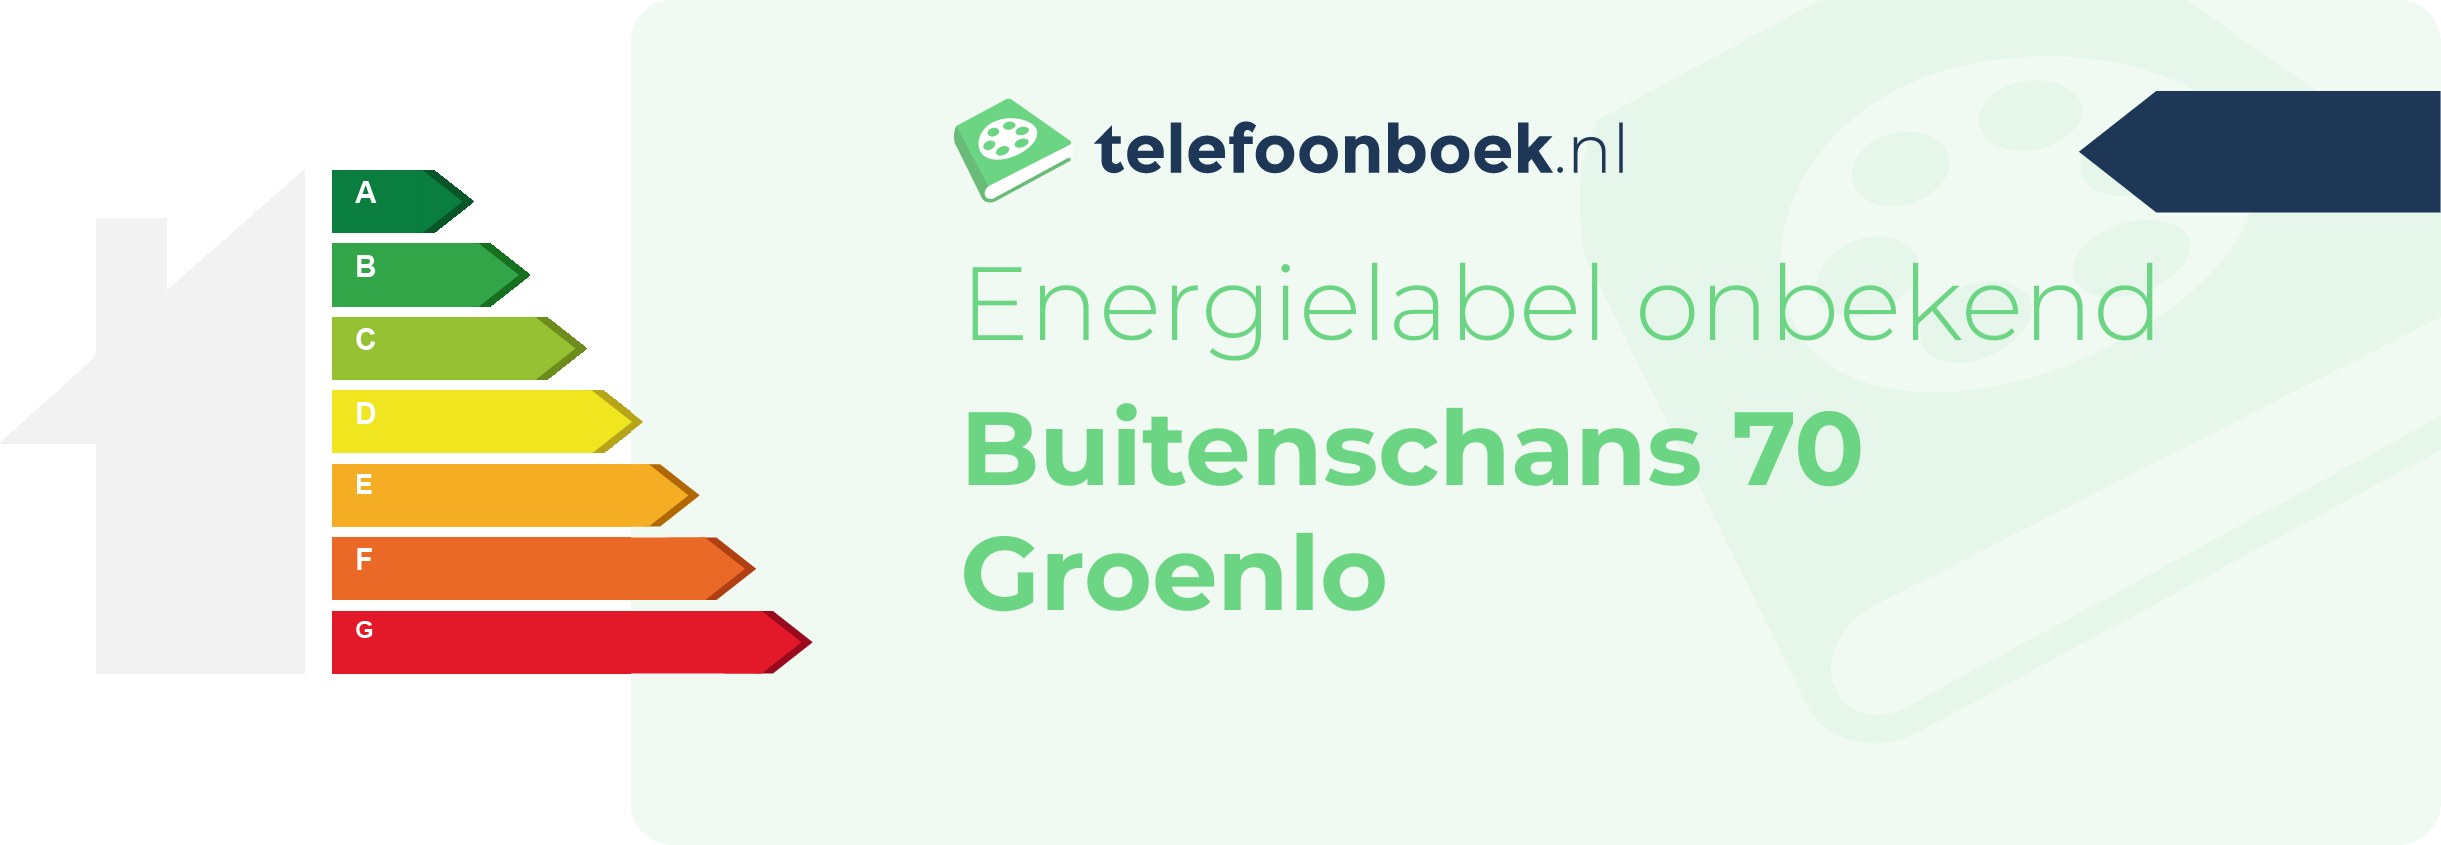 Energielabel Buitenschans 70 Groenlo